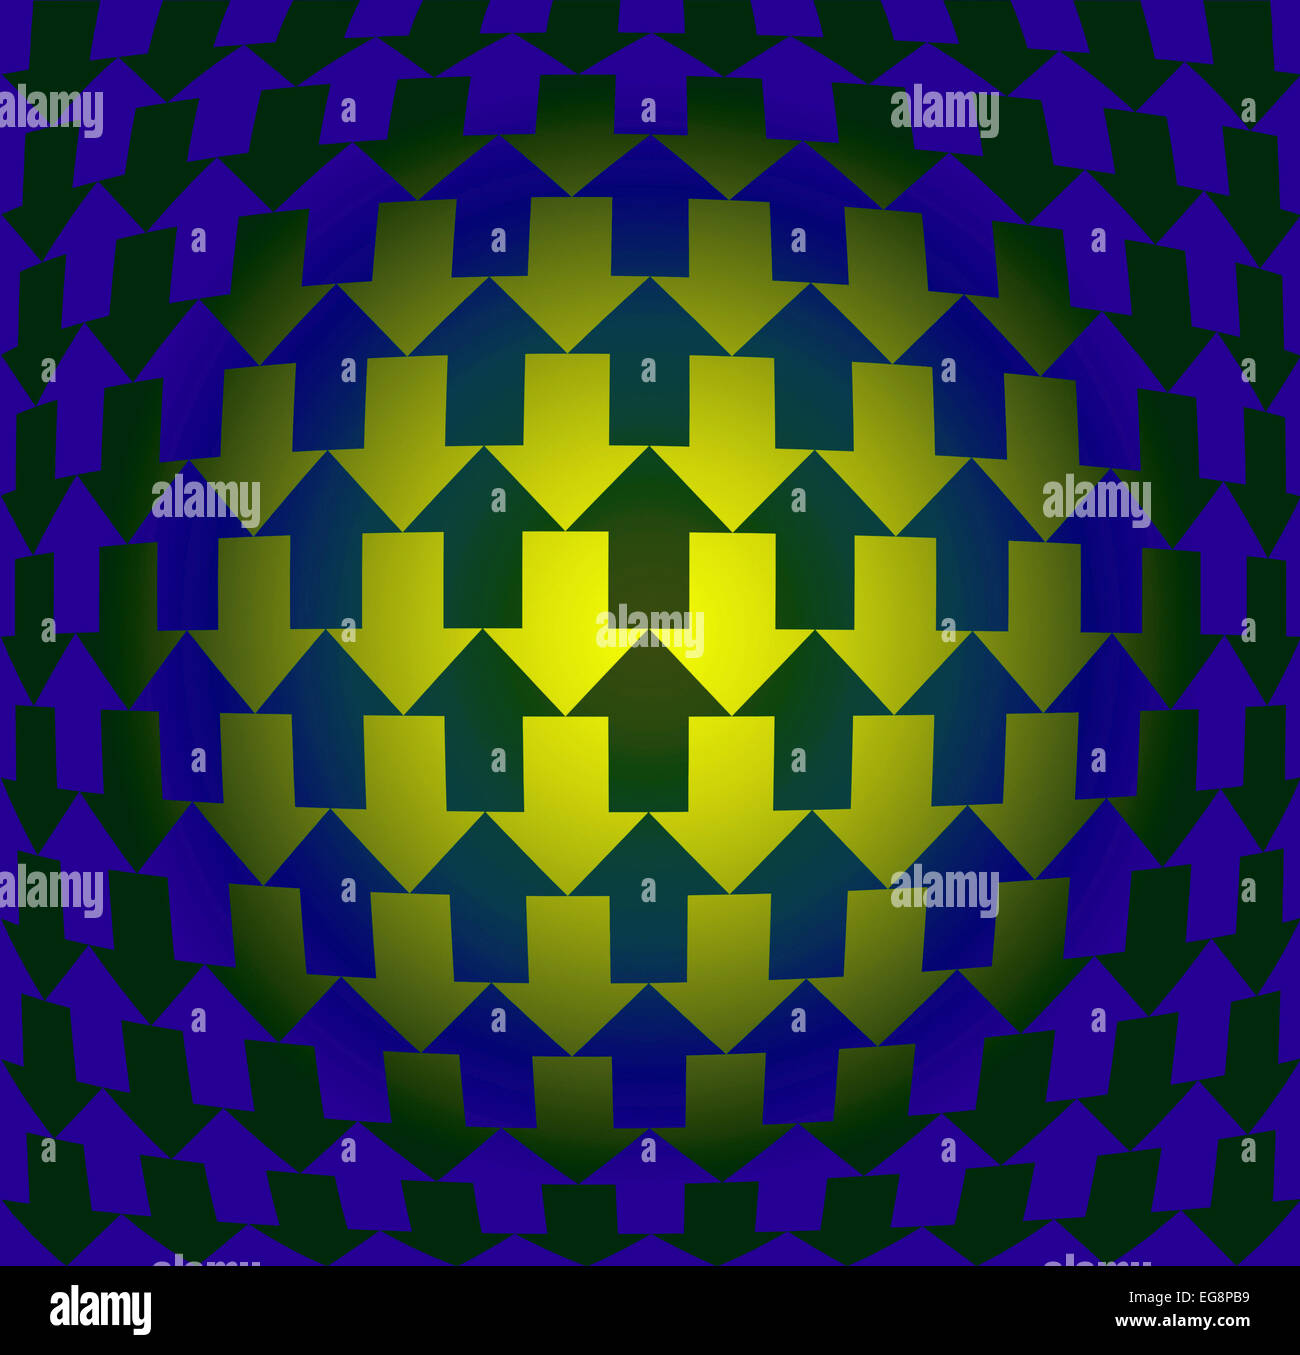 Pfeile zeigen in entgegengesetzte Richtungen, mit Farbverlauf und Warp, Illusion von drei Dimensionen Stockfoto